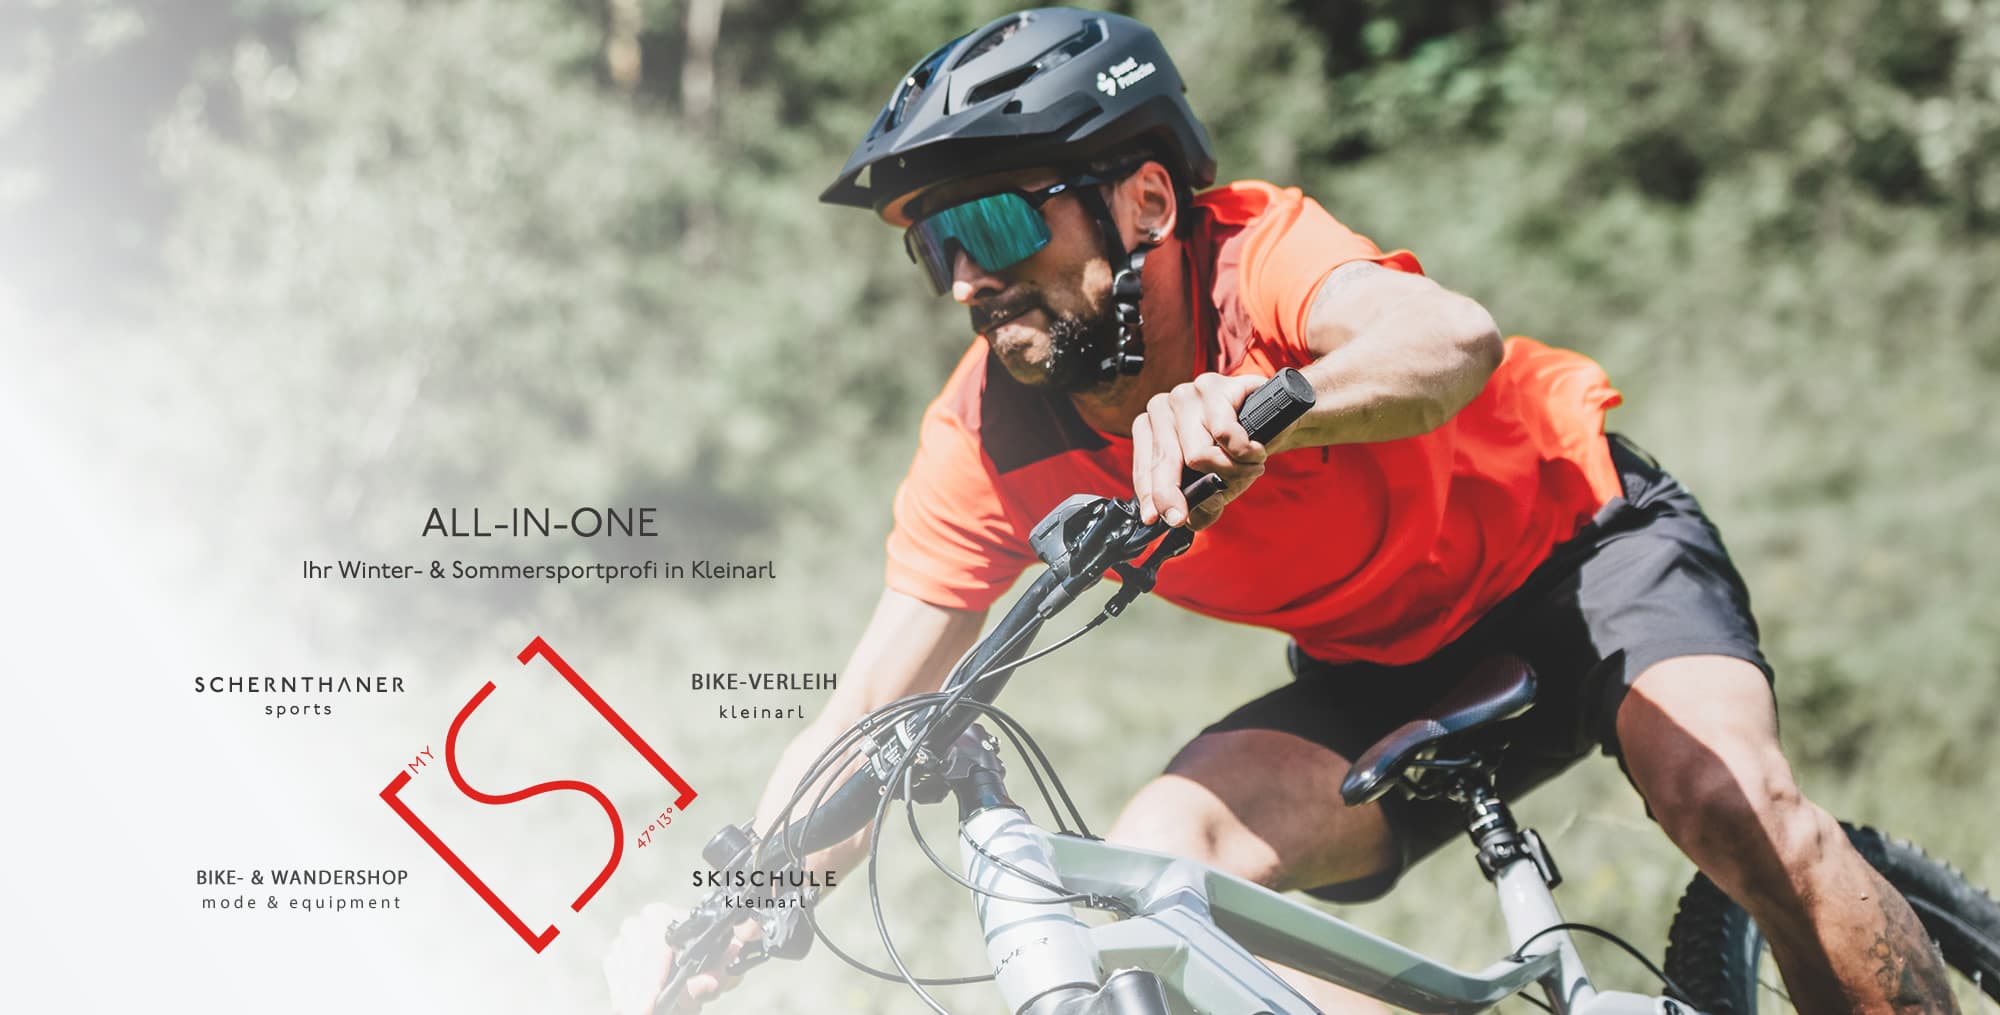 Schernthaner sports - Sportgeschäft im My S mit Bikeshop für Mountainbike-Touren rund um Kleinarl